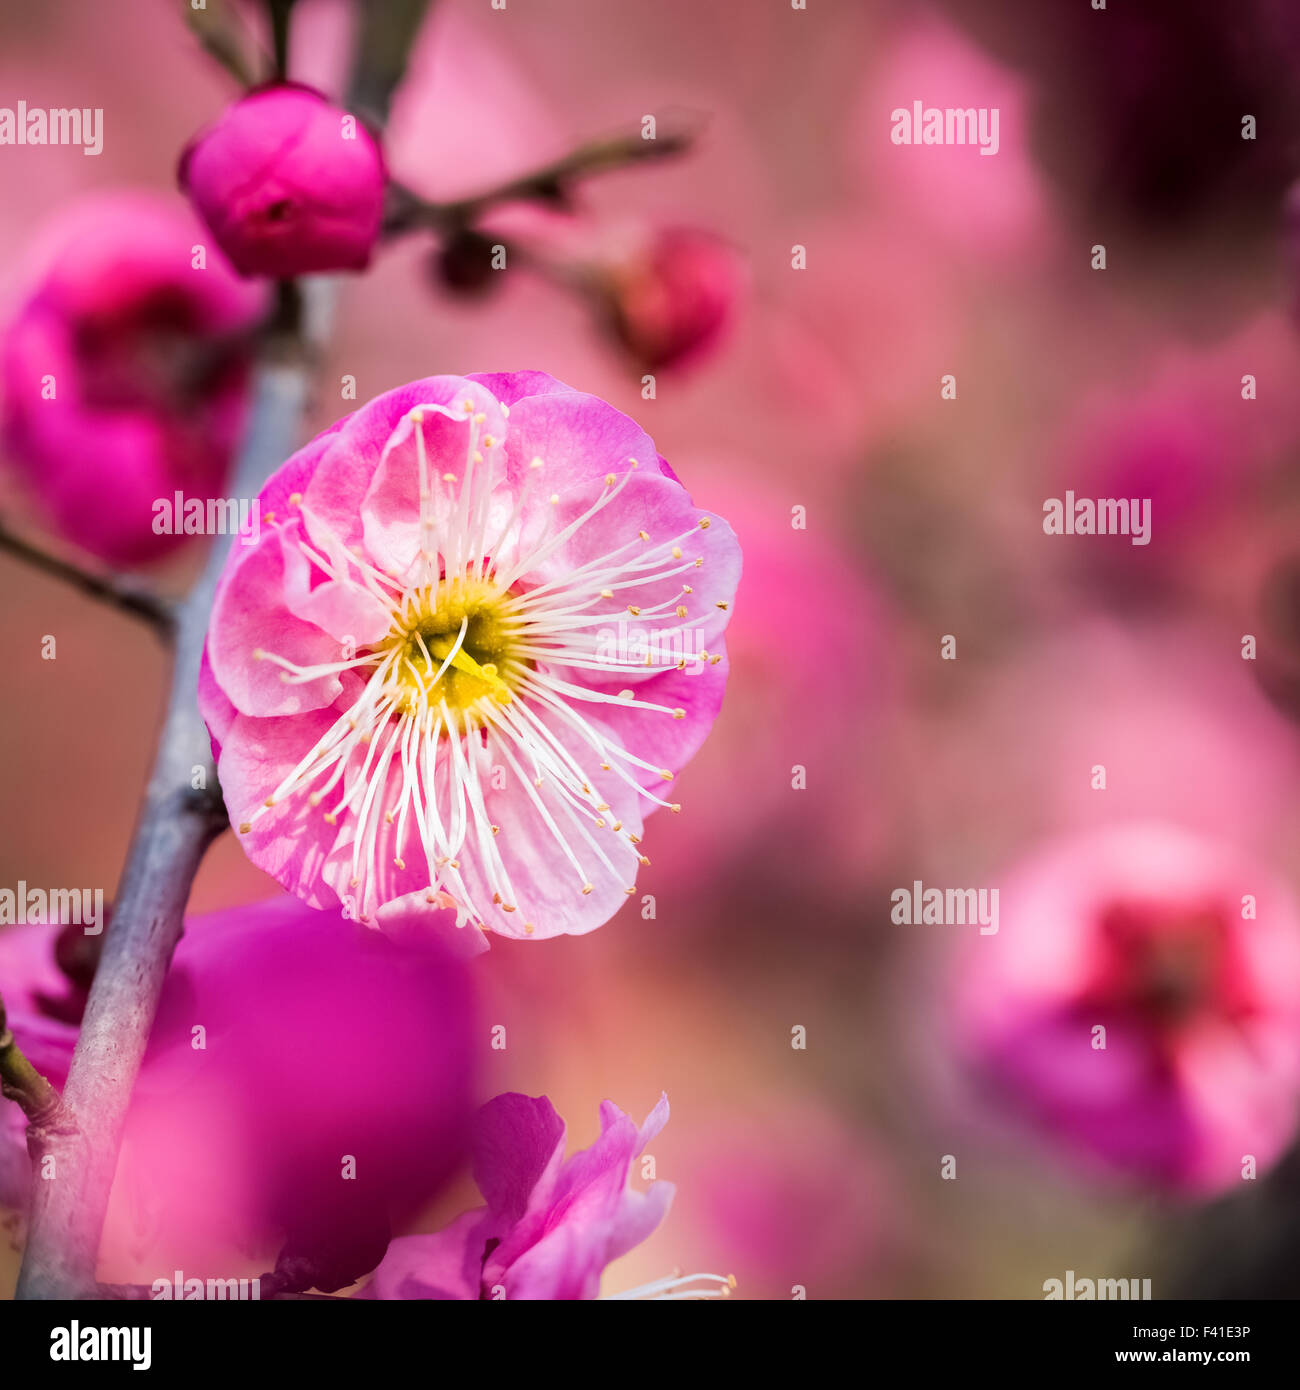 red plum blossom closeup Stock Photo